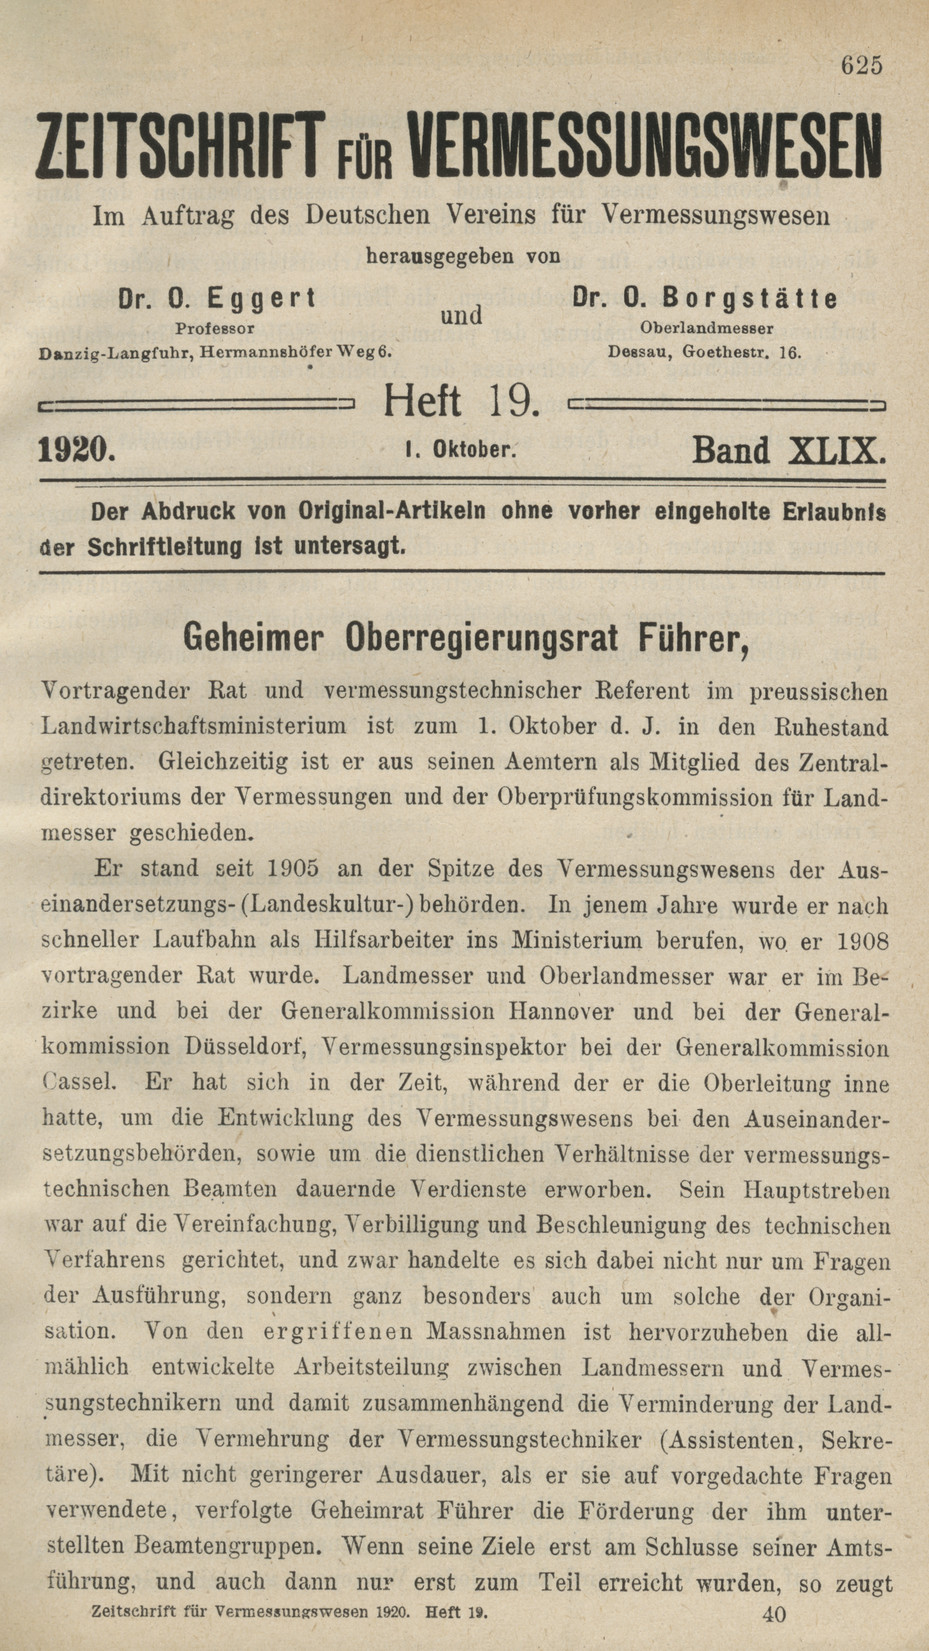 Zeitschrift für Vermessungswesen, Heft 19, Band XLIX